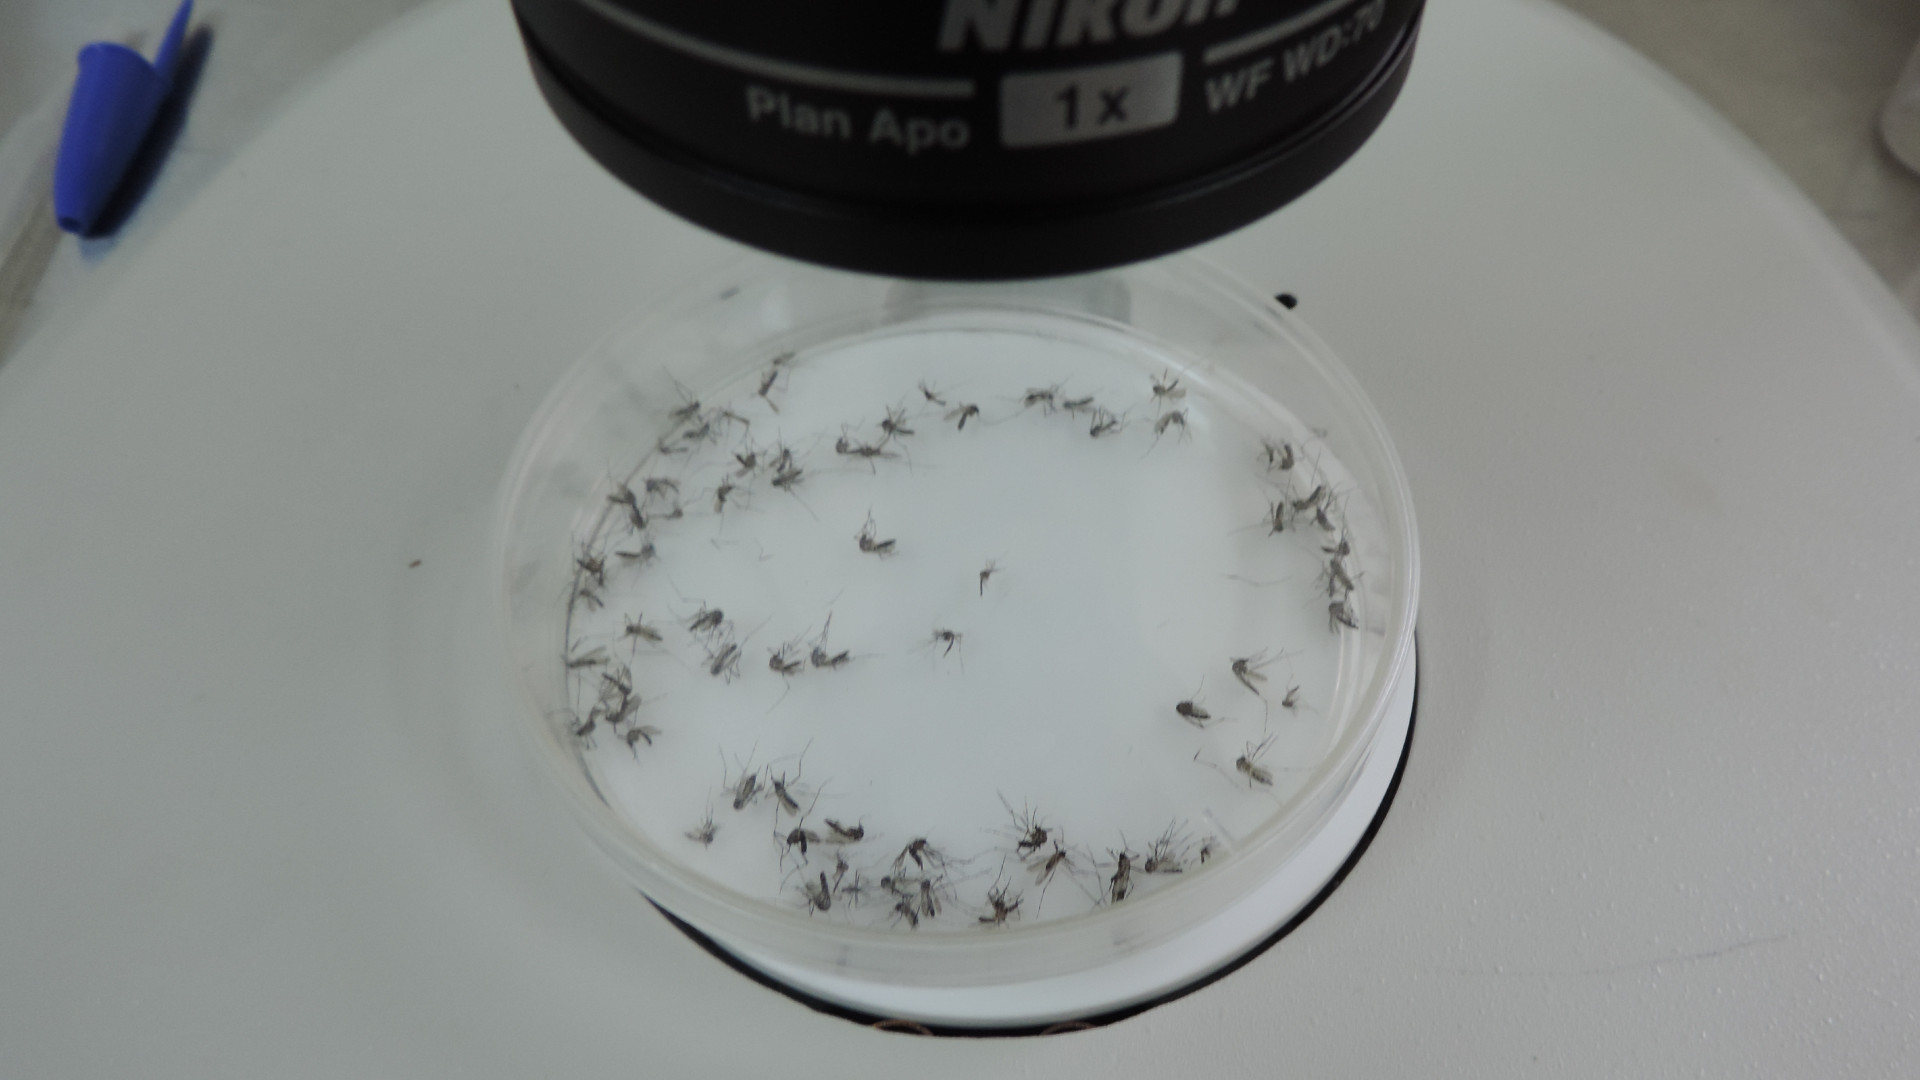 Durante los ensayos de liberación y recaptura se cuenta diariamente la cantidad de mosquitos por color, para establecer qué distancia viajan y cuánto tiempo viven.